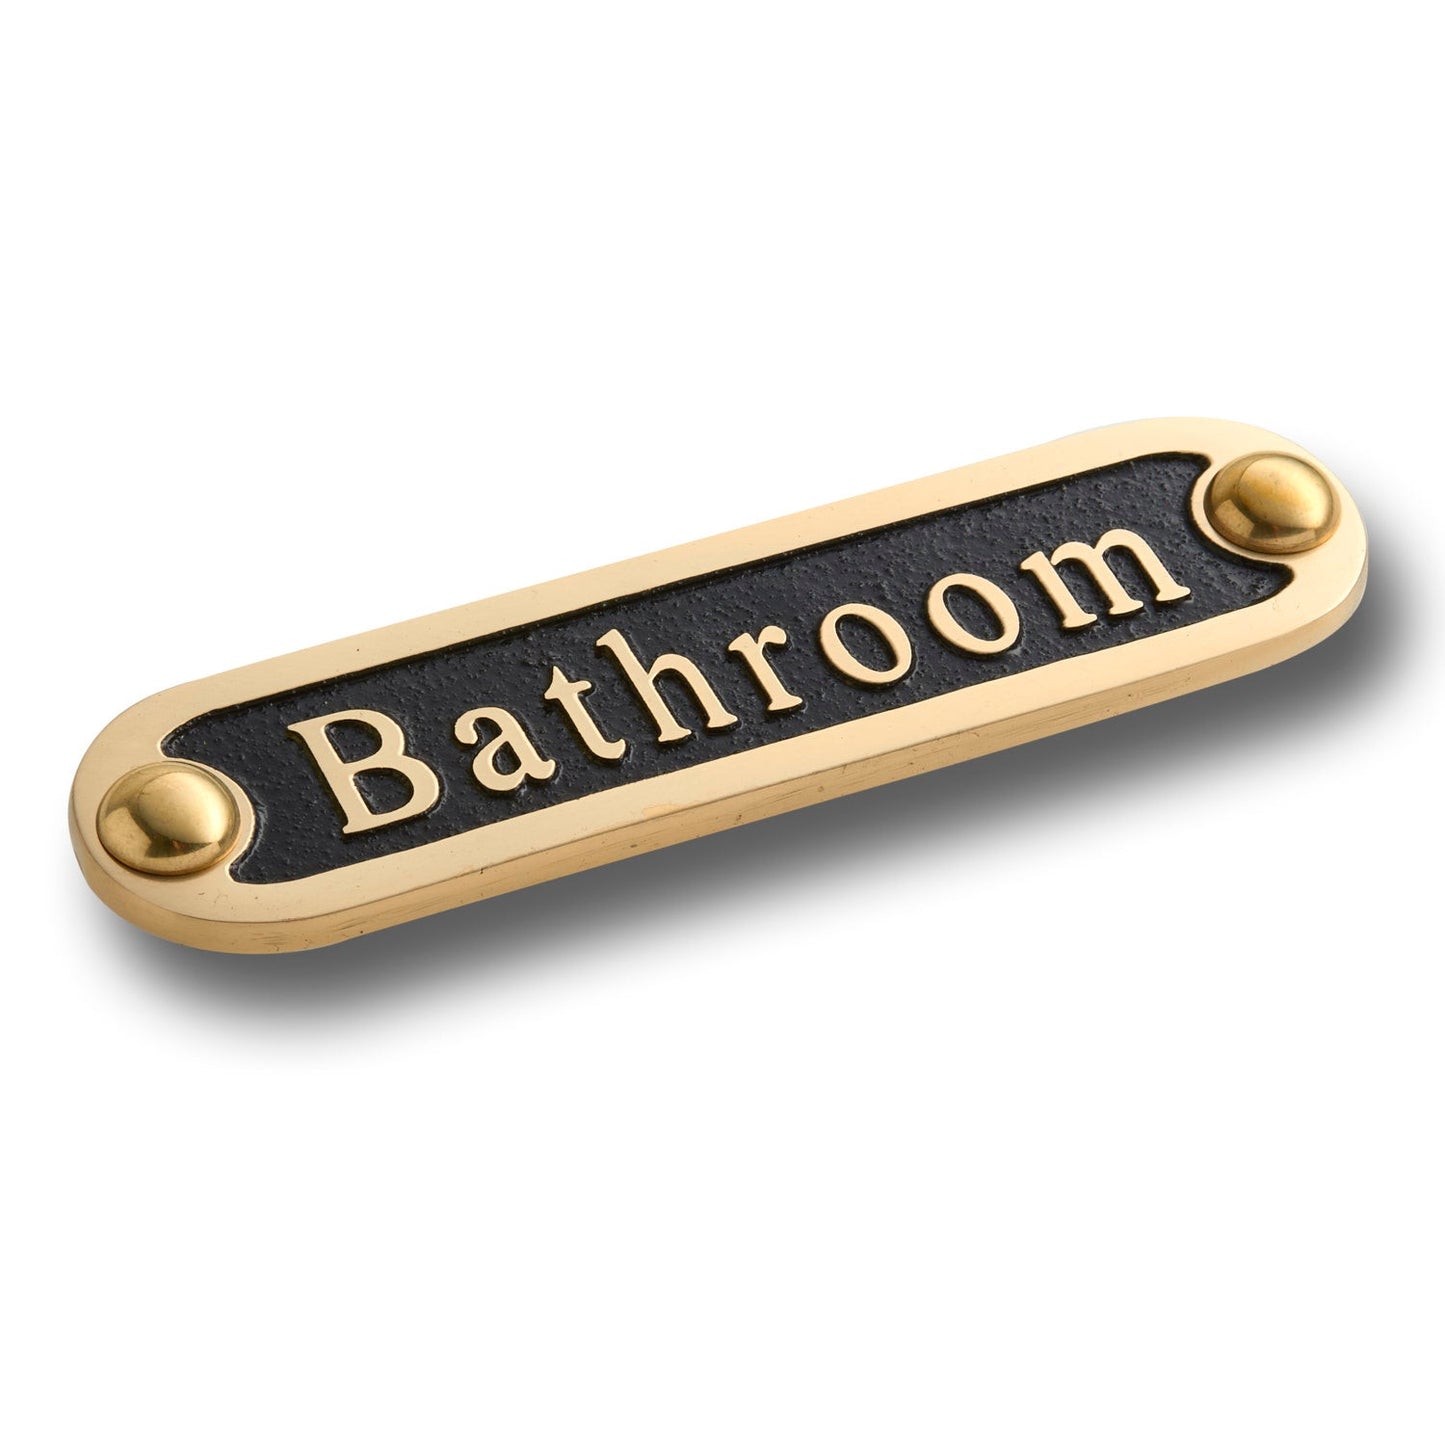 'Bathroom' Door Sign - The Metal Foundry